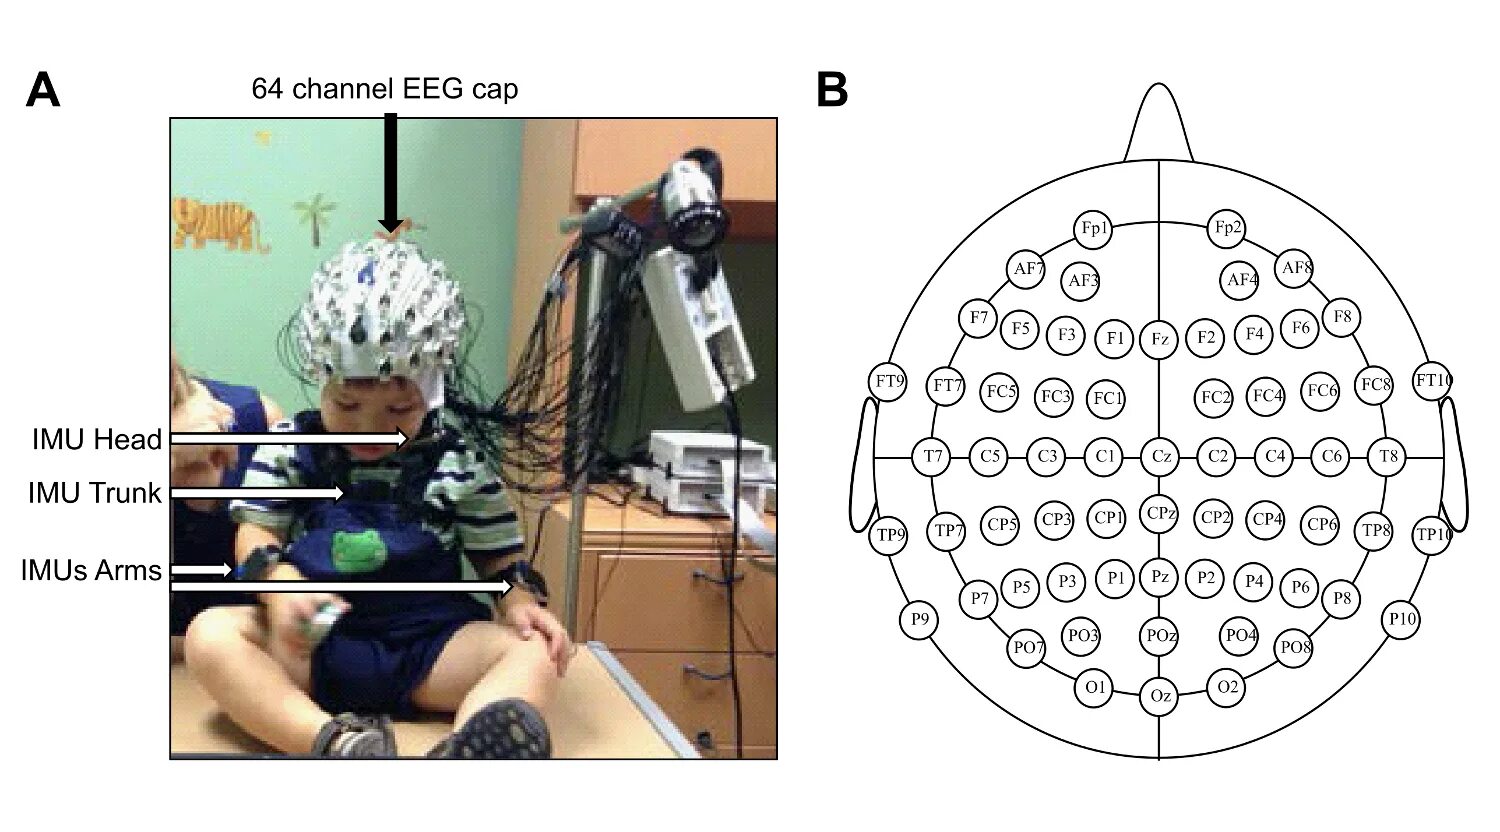 Ээг чебоксары. Расположение электродов ЭЭГ. ЭЭГ мониторинг головного мозга. ЭЭГ шапочка схема. Электроэнцефалография головного мозга (ЭЭГ).